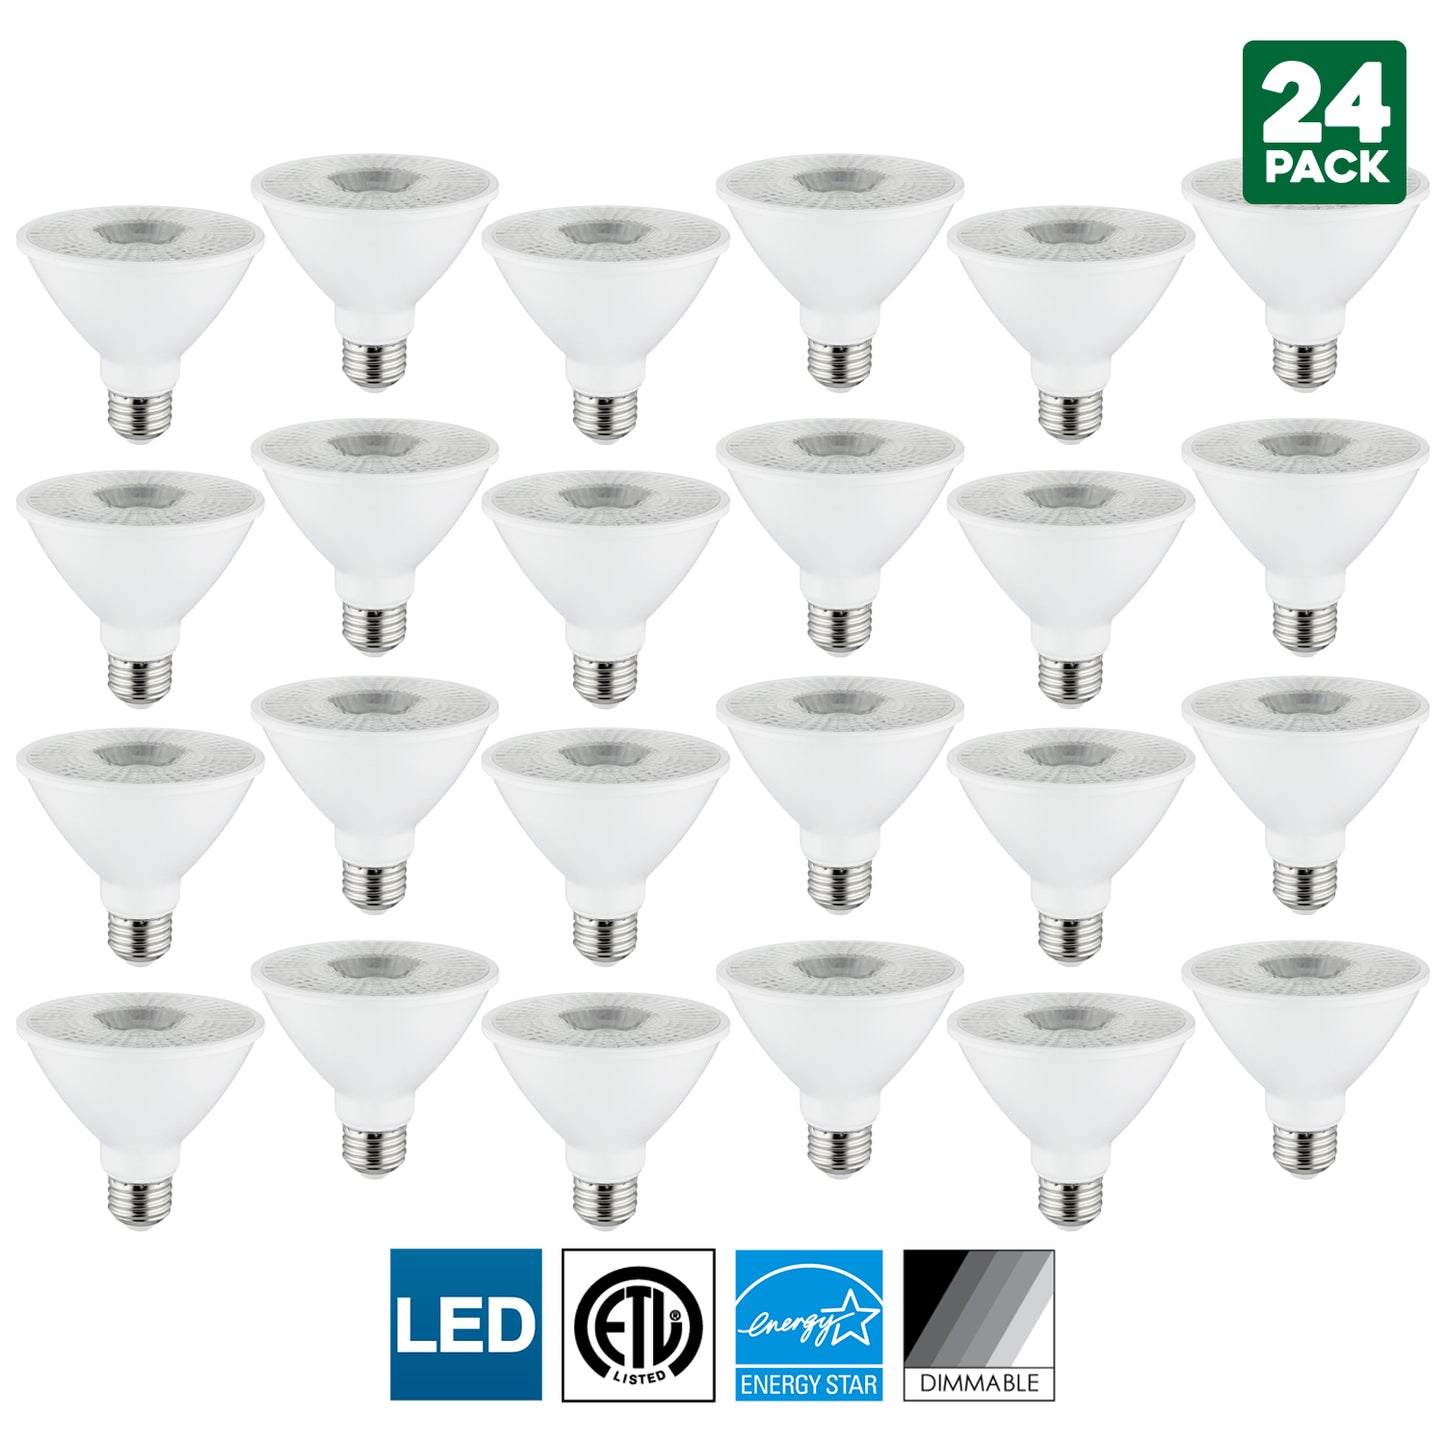 Sunlite LED PAR30S Spotlight Bulb, 10 Watt (75 Watt Equivalent), Dimmable, 3000K Warm White, 750 Lumens, Medium (E26) Base, Indoor Use, Energy Star Certified